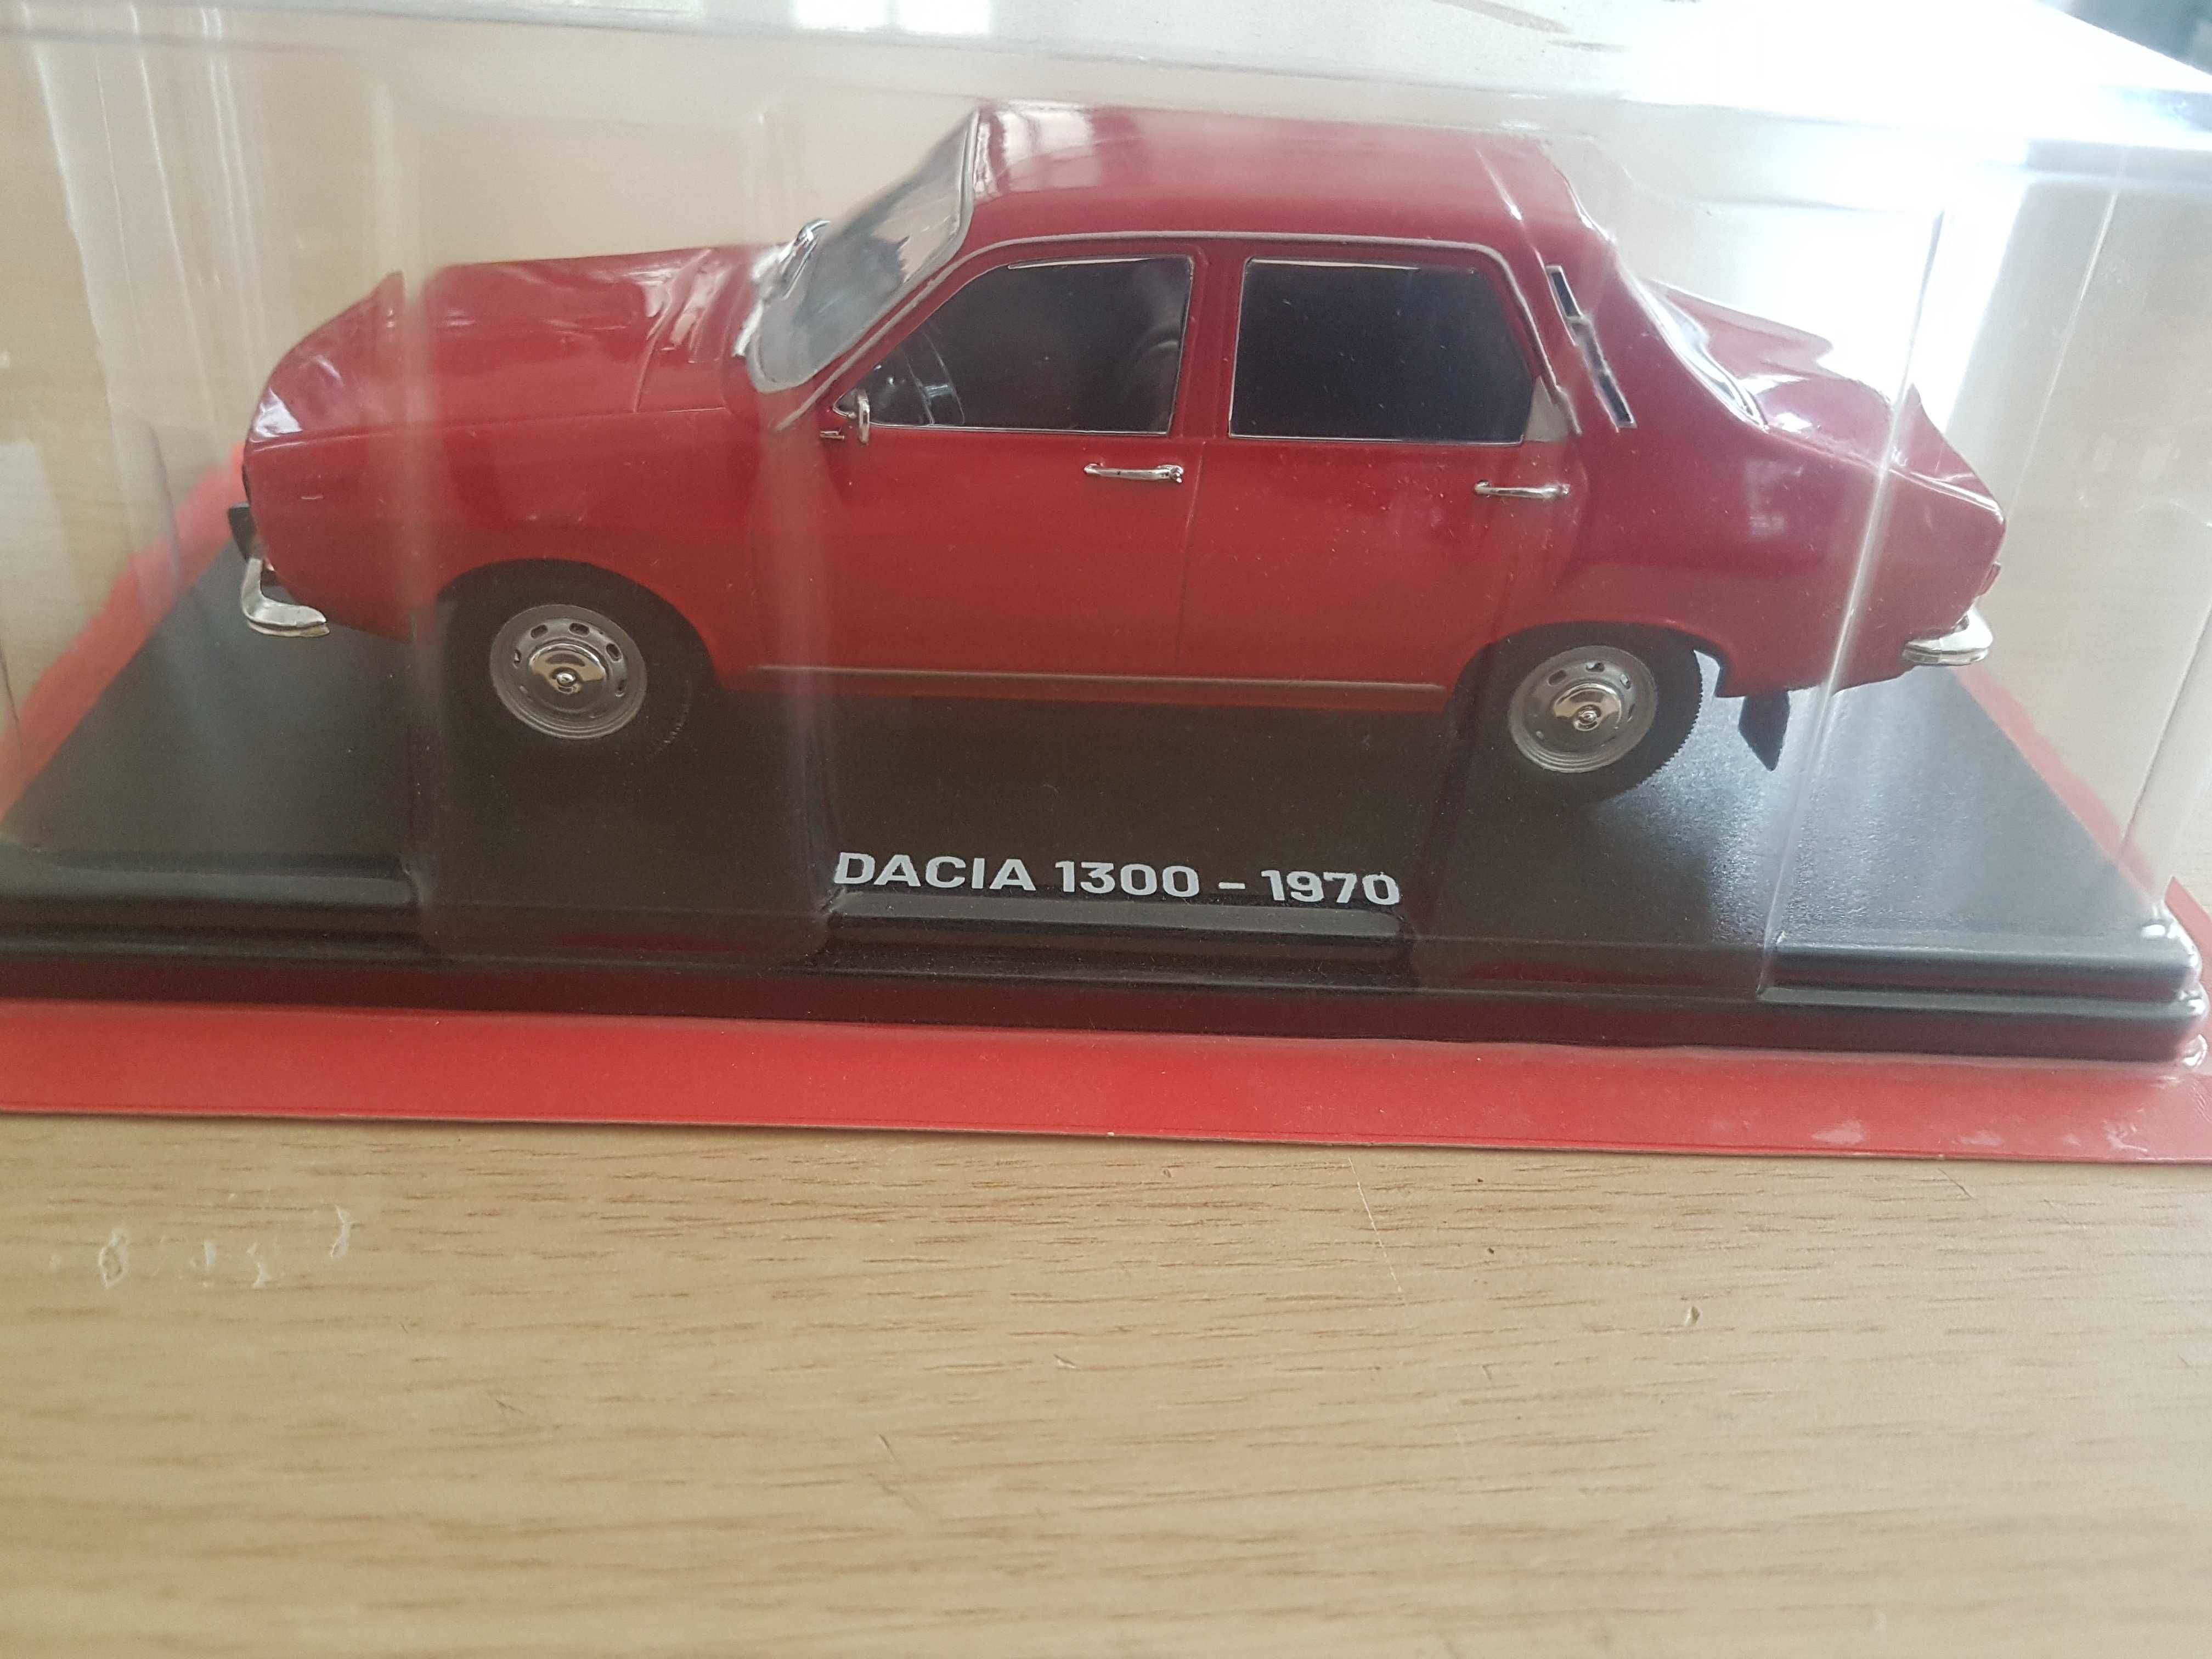 Macheta Dacia 1300 scara 1/24